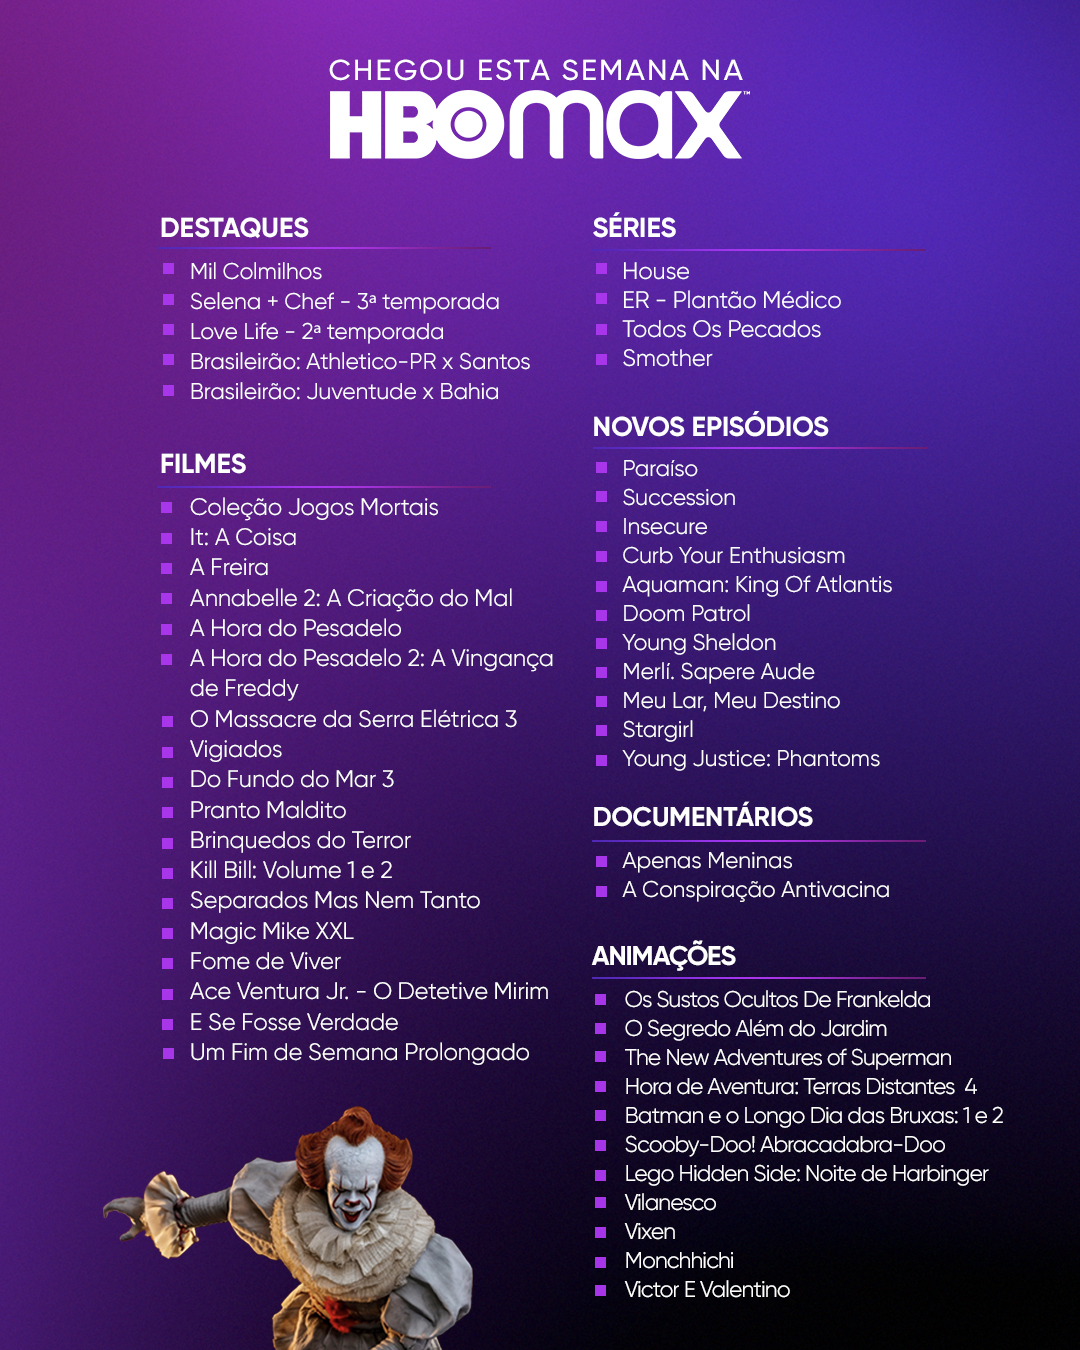 HBO Max Brasil on X: Tudo o que você quer ver, pelo melhor preço. Só na HBO  Max. / X